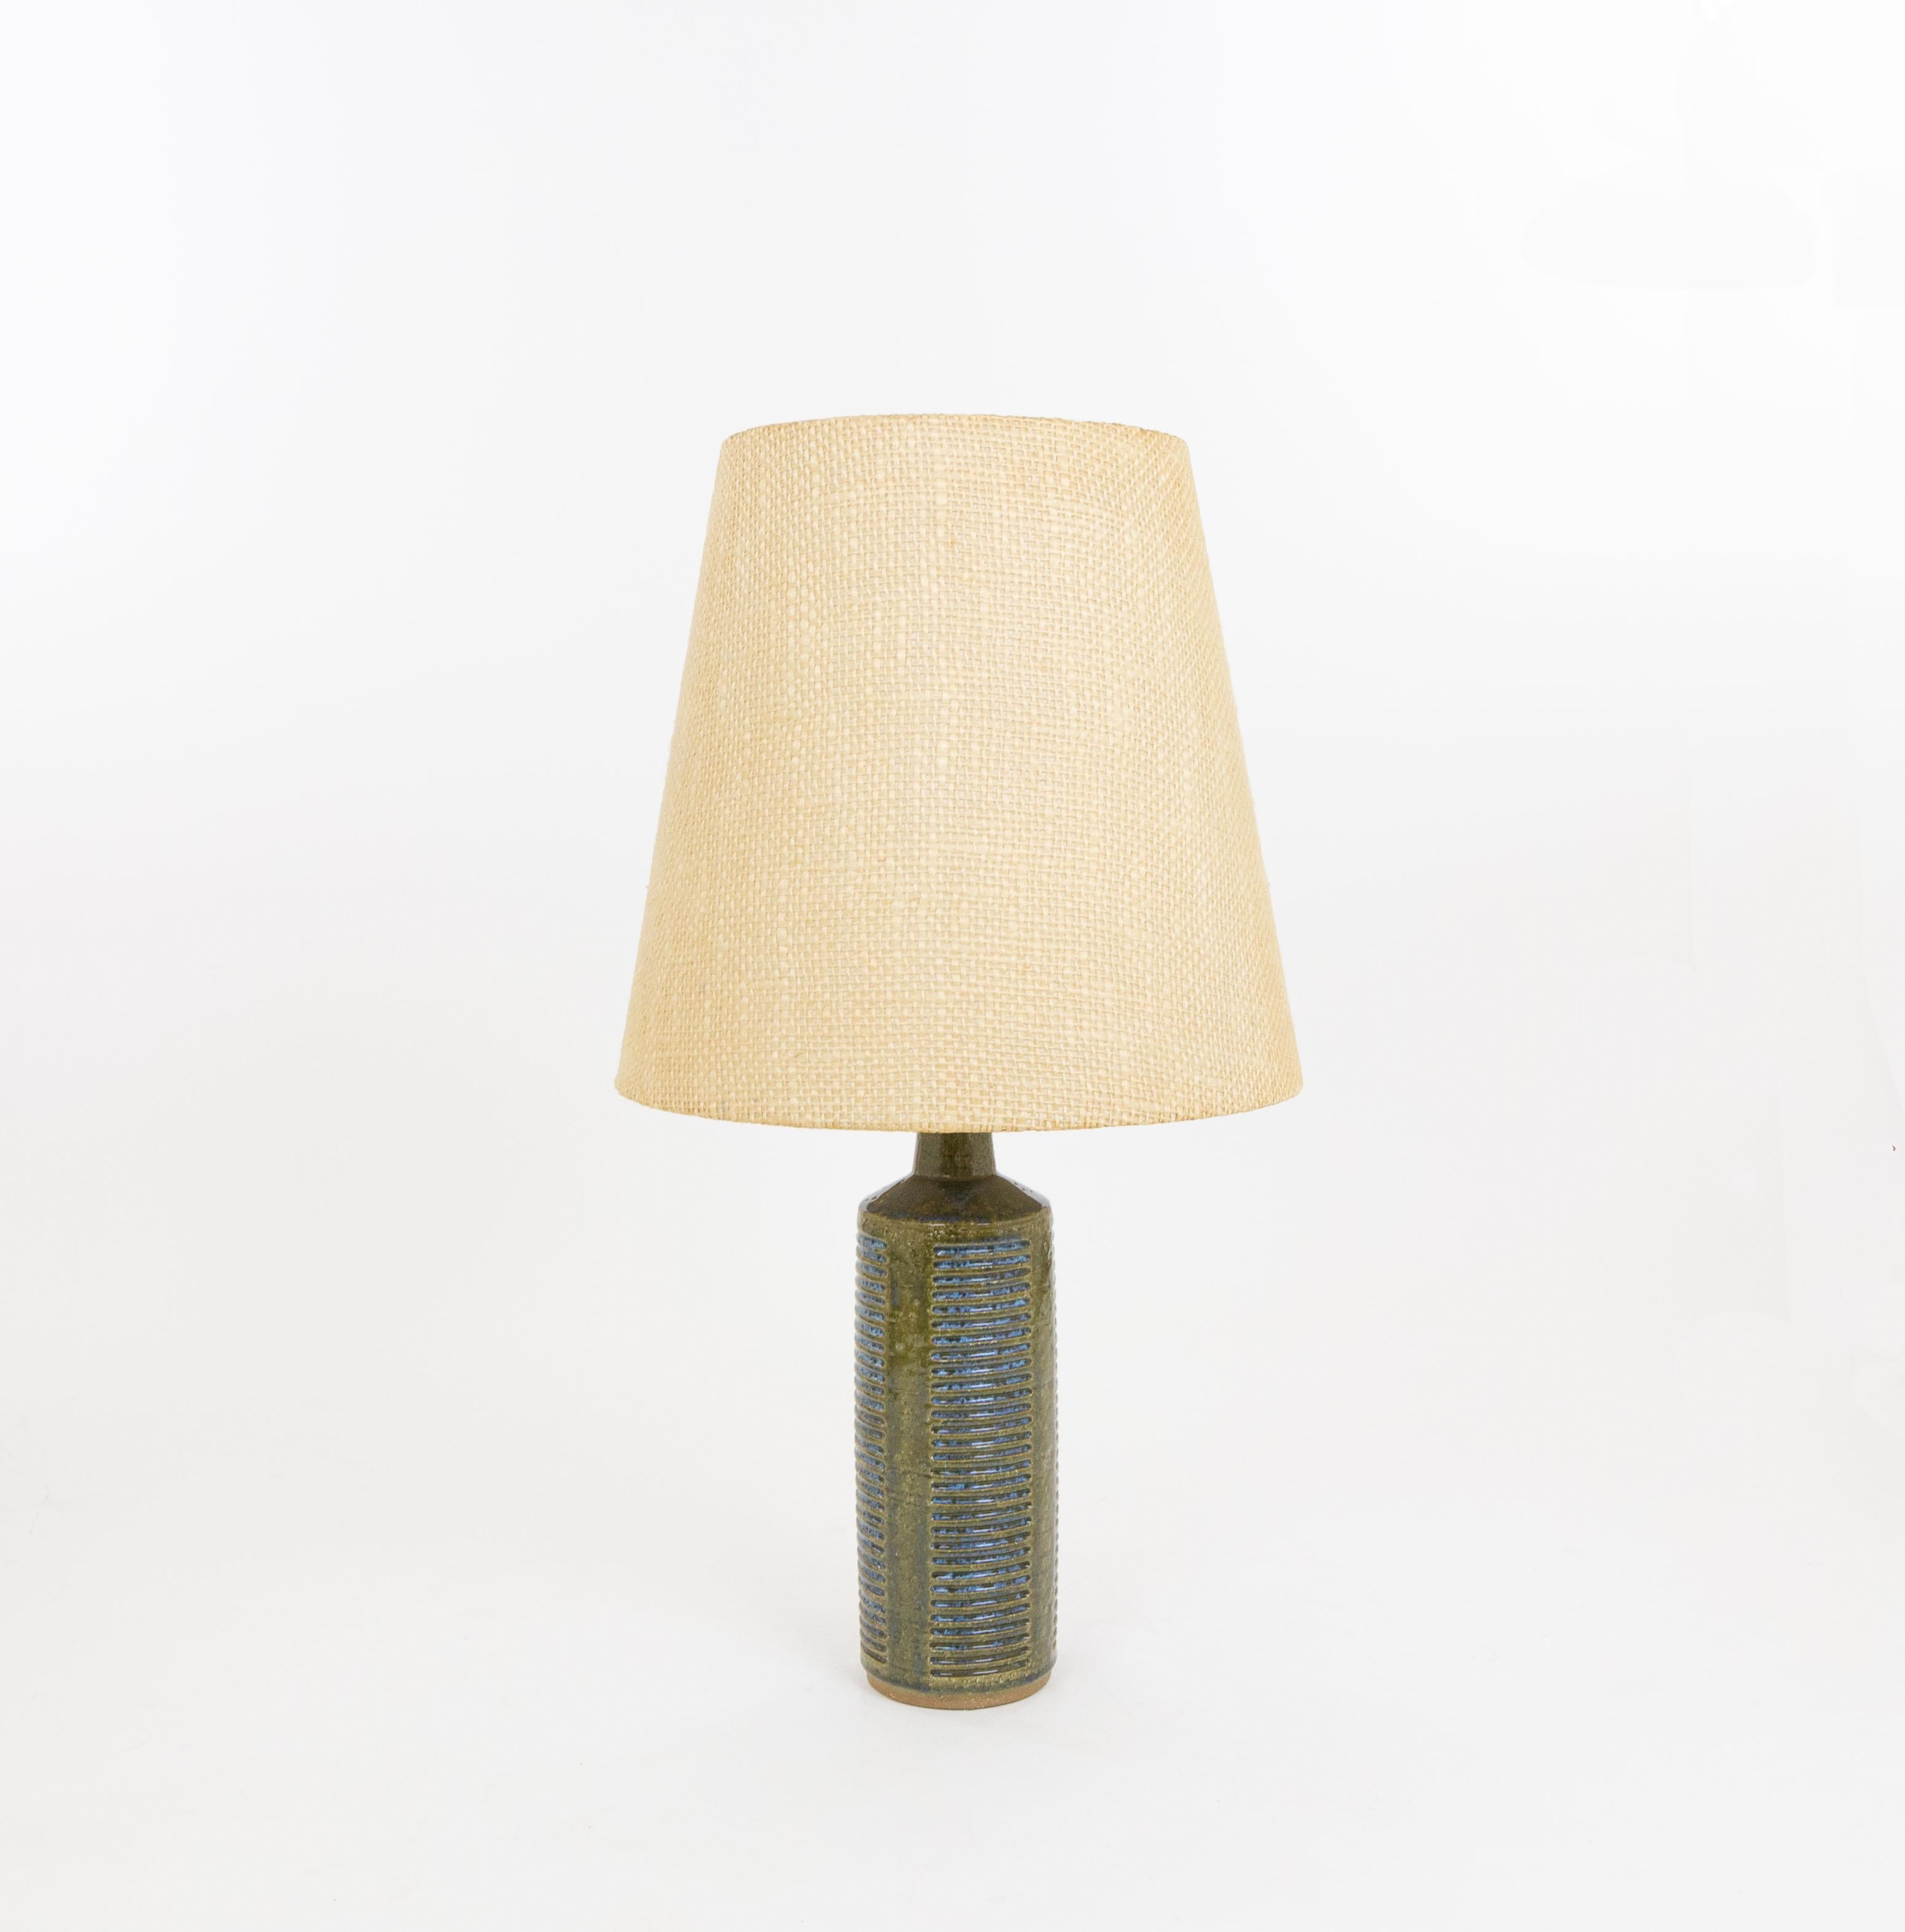 Lampe de table modèle DL/27 réalisée par Annelise et Per Linnemann-Schmidt pour Palshus dans les années 1960. La couleur de la base décorée à la main est vert olive et bleu. Il présente des motifs impressionnés.

La lampe est livrée avec son support